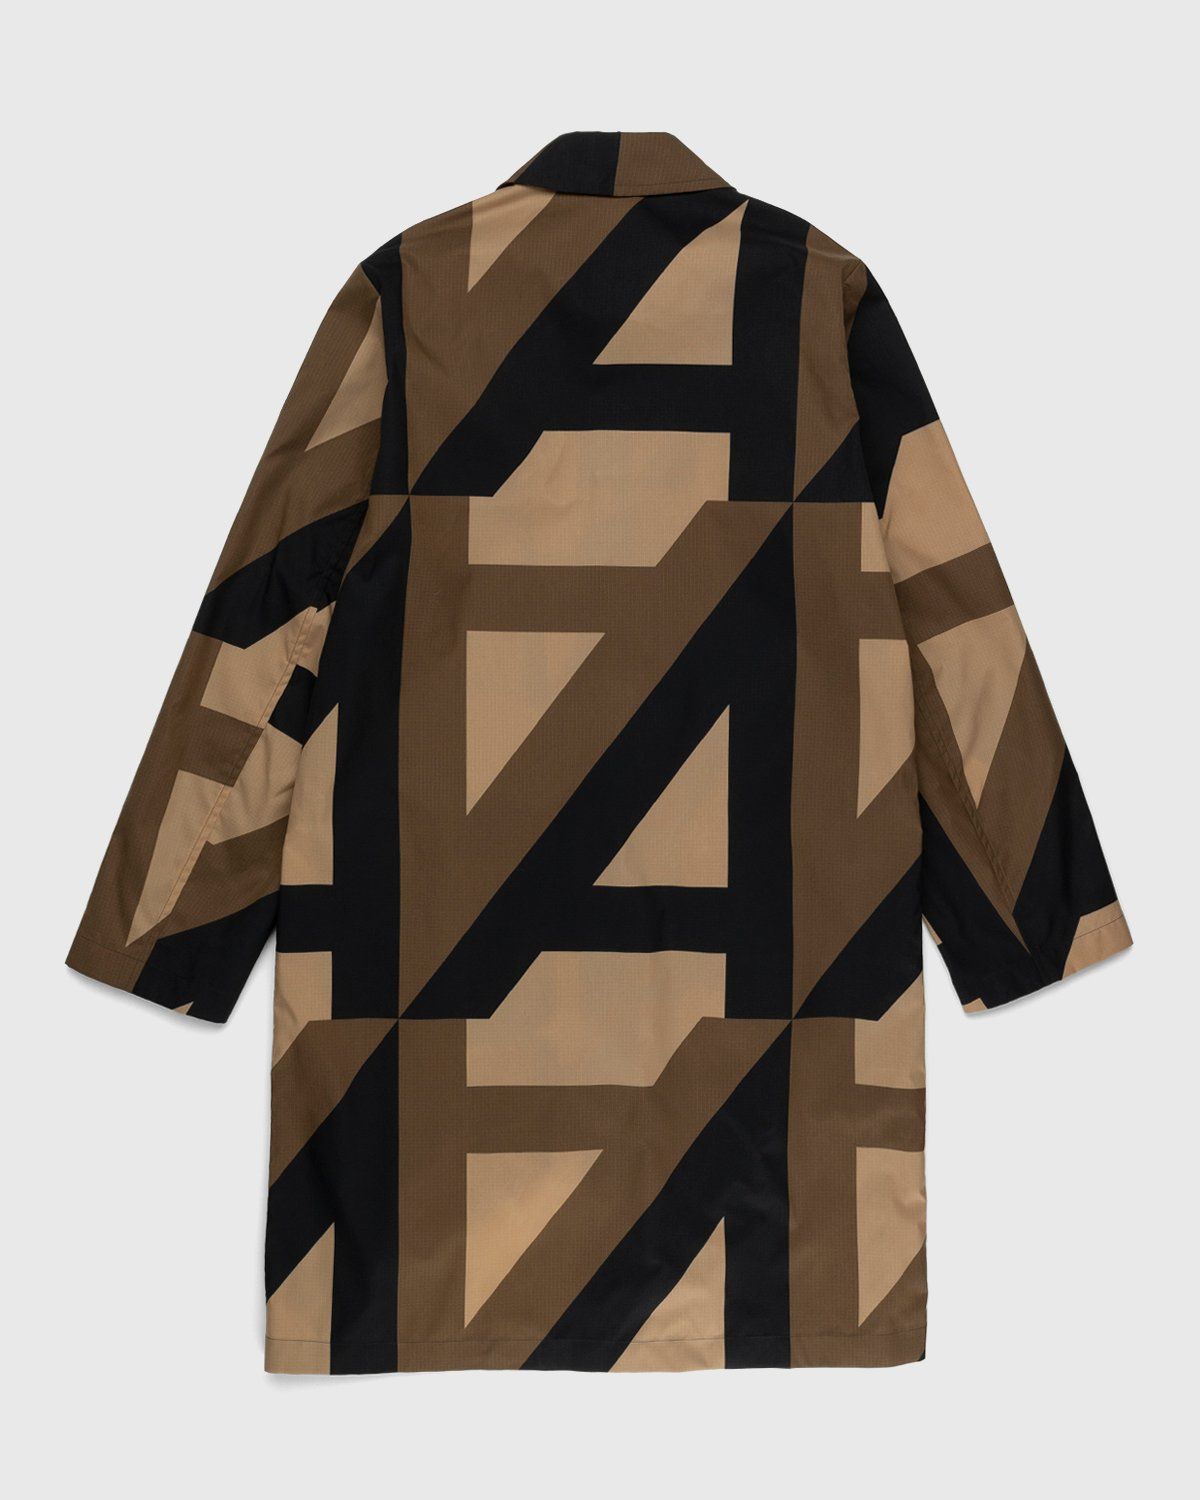 Dries van Noten – Ralen Coat Brown - Outerwear - Beige - Image 2